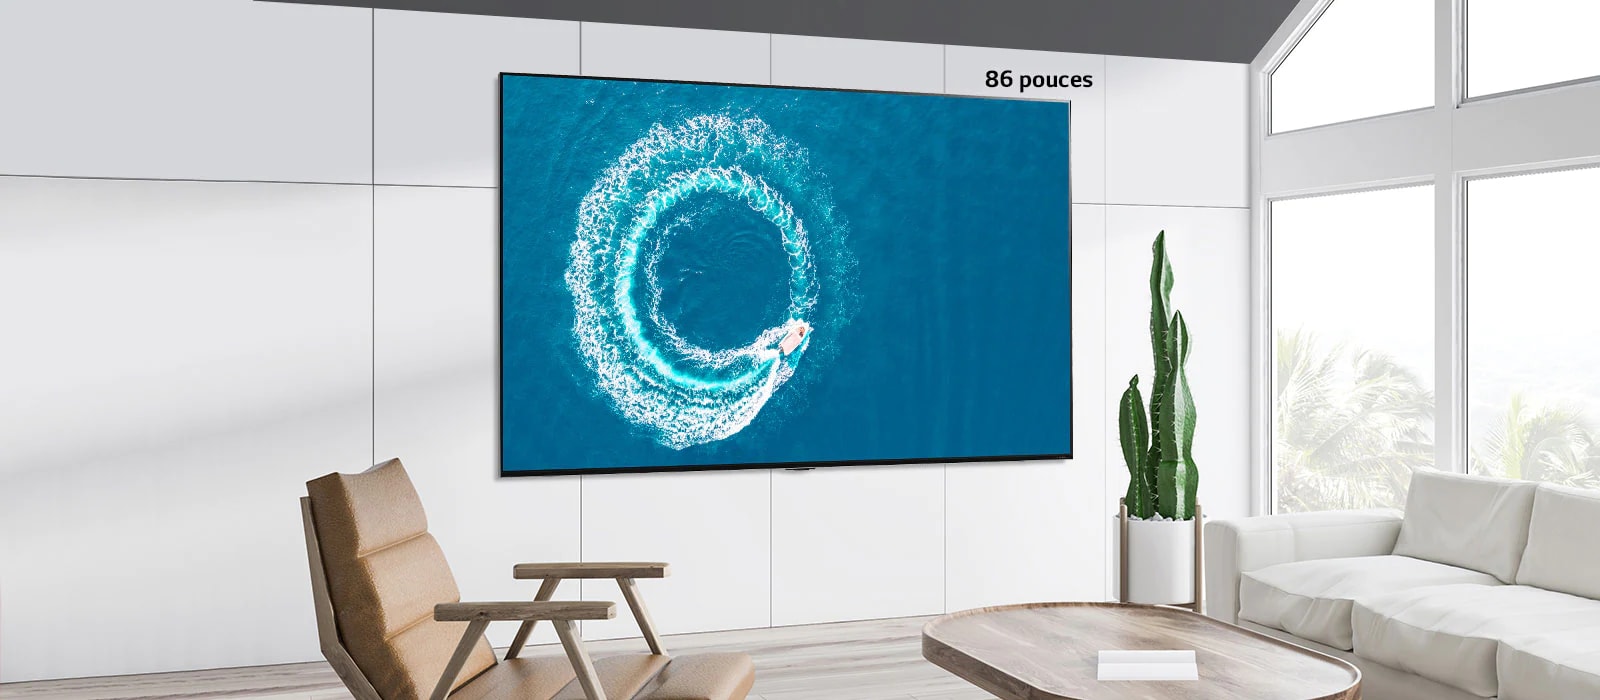 Téléviseur Mini LED QNED de LG fixé au mur dans un espace blanc moderne. L’image défilante de gauche à droite montre la différence entre un écran de 43 pouces et un écran de 86 pouces.